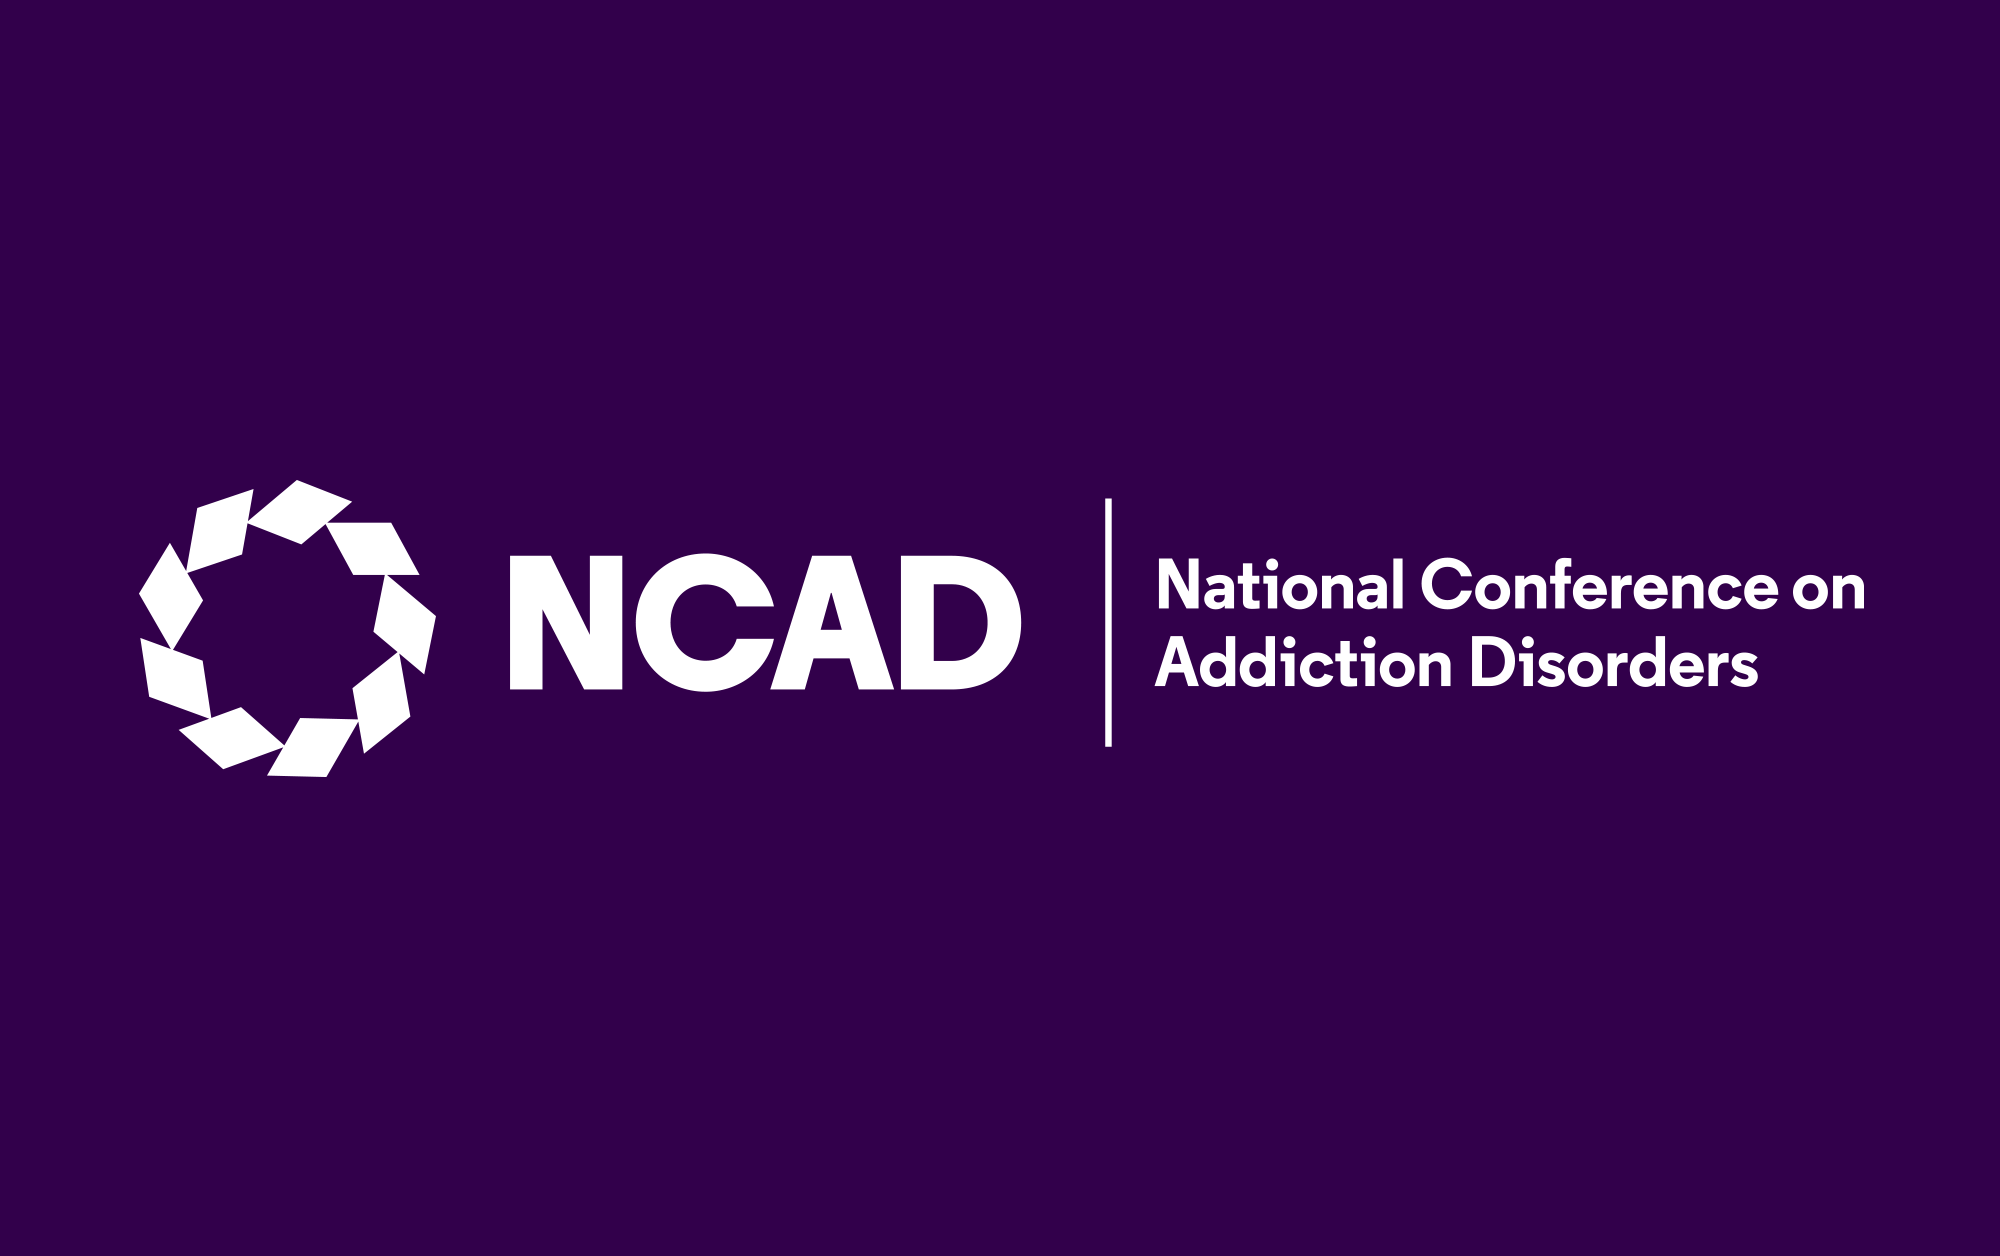 NCAD-IC&RC